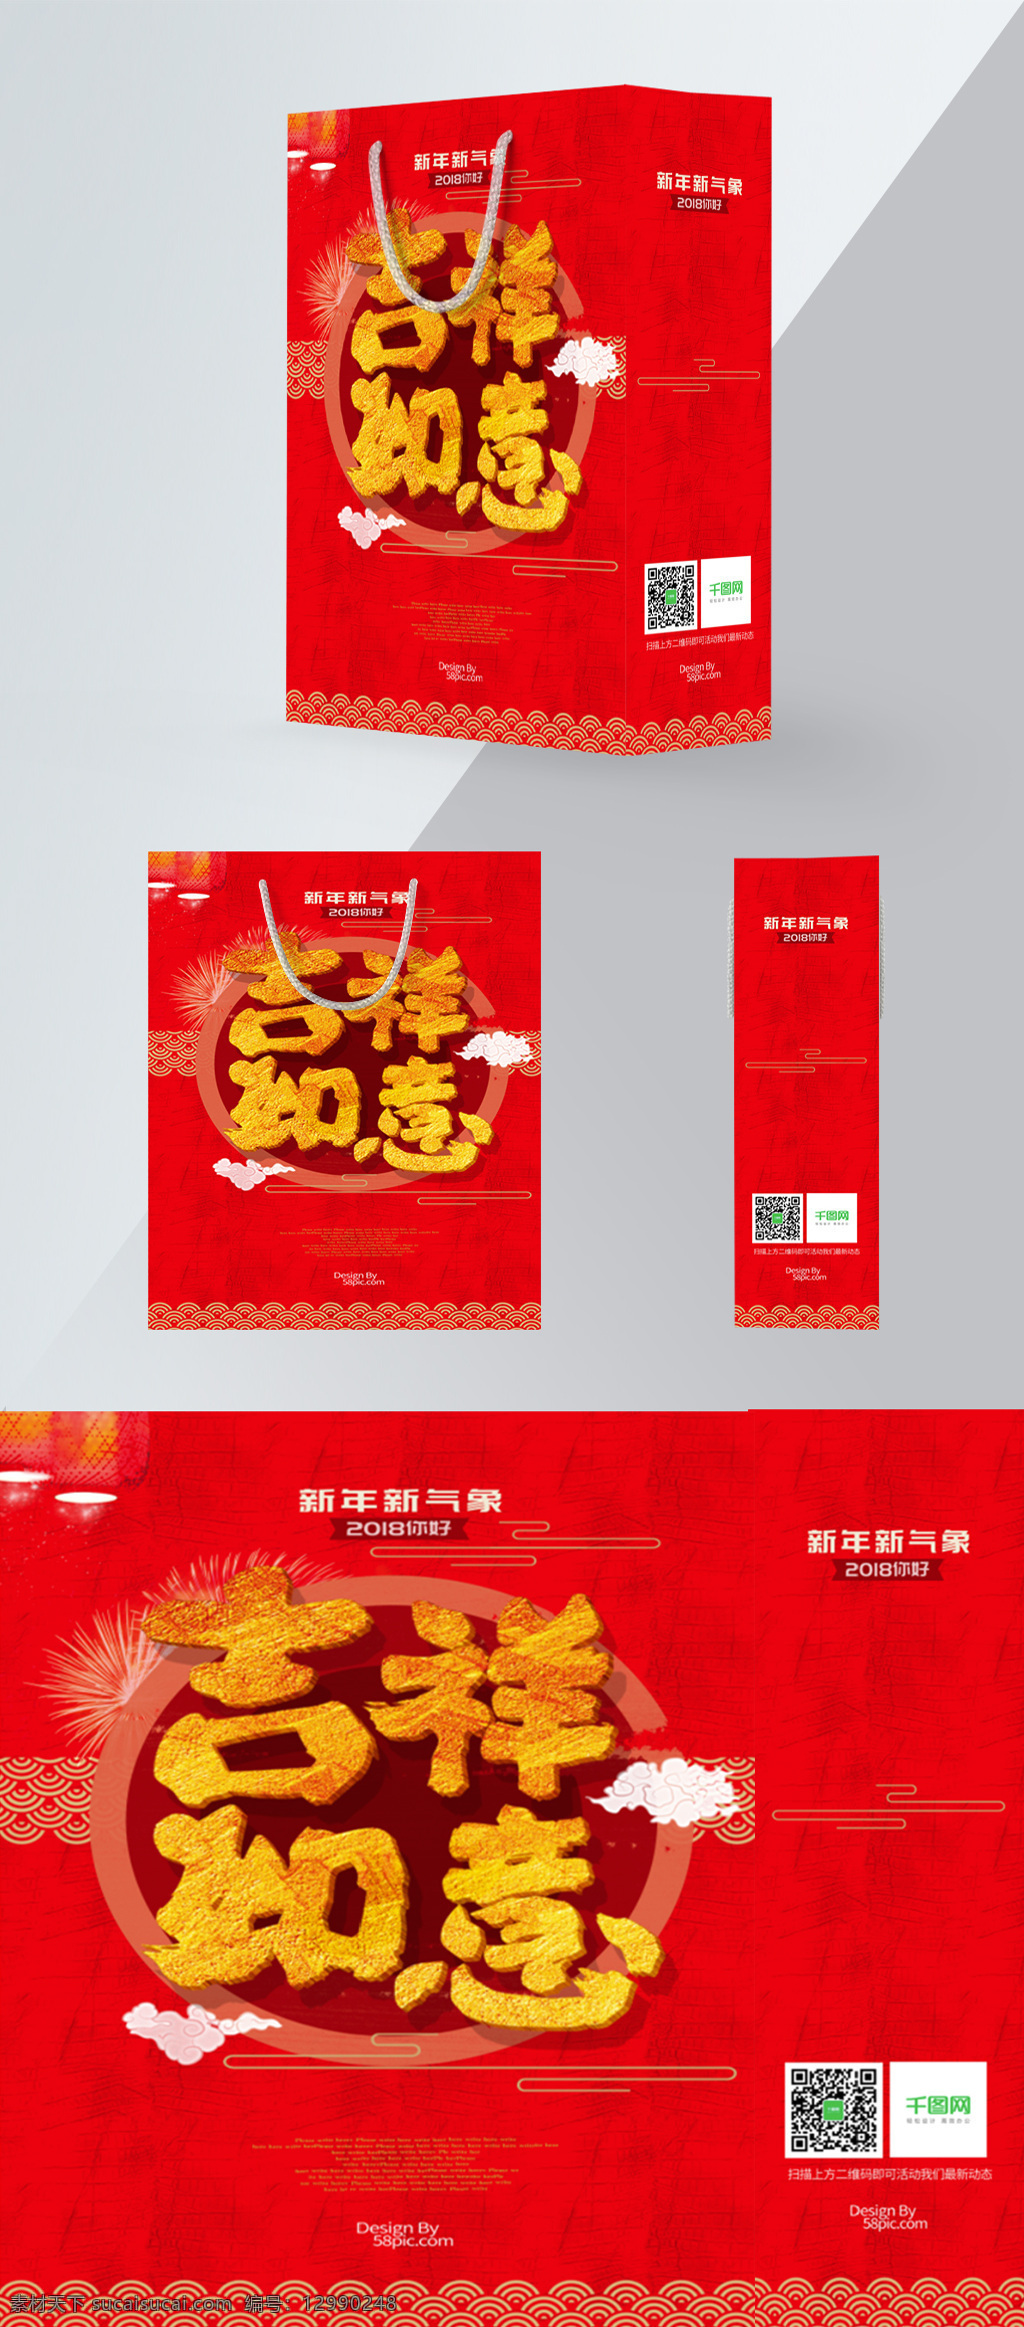 2018 春节 手提袋 中 国风 吉祥如意 2018春节 包装设计 红色 精美包装 祥云 元宵 中国风